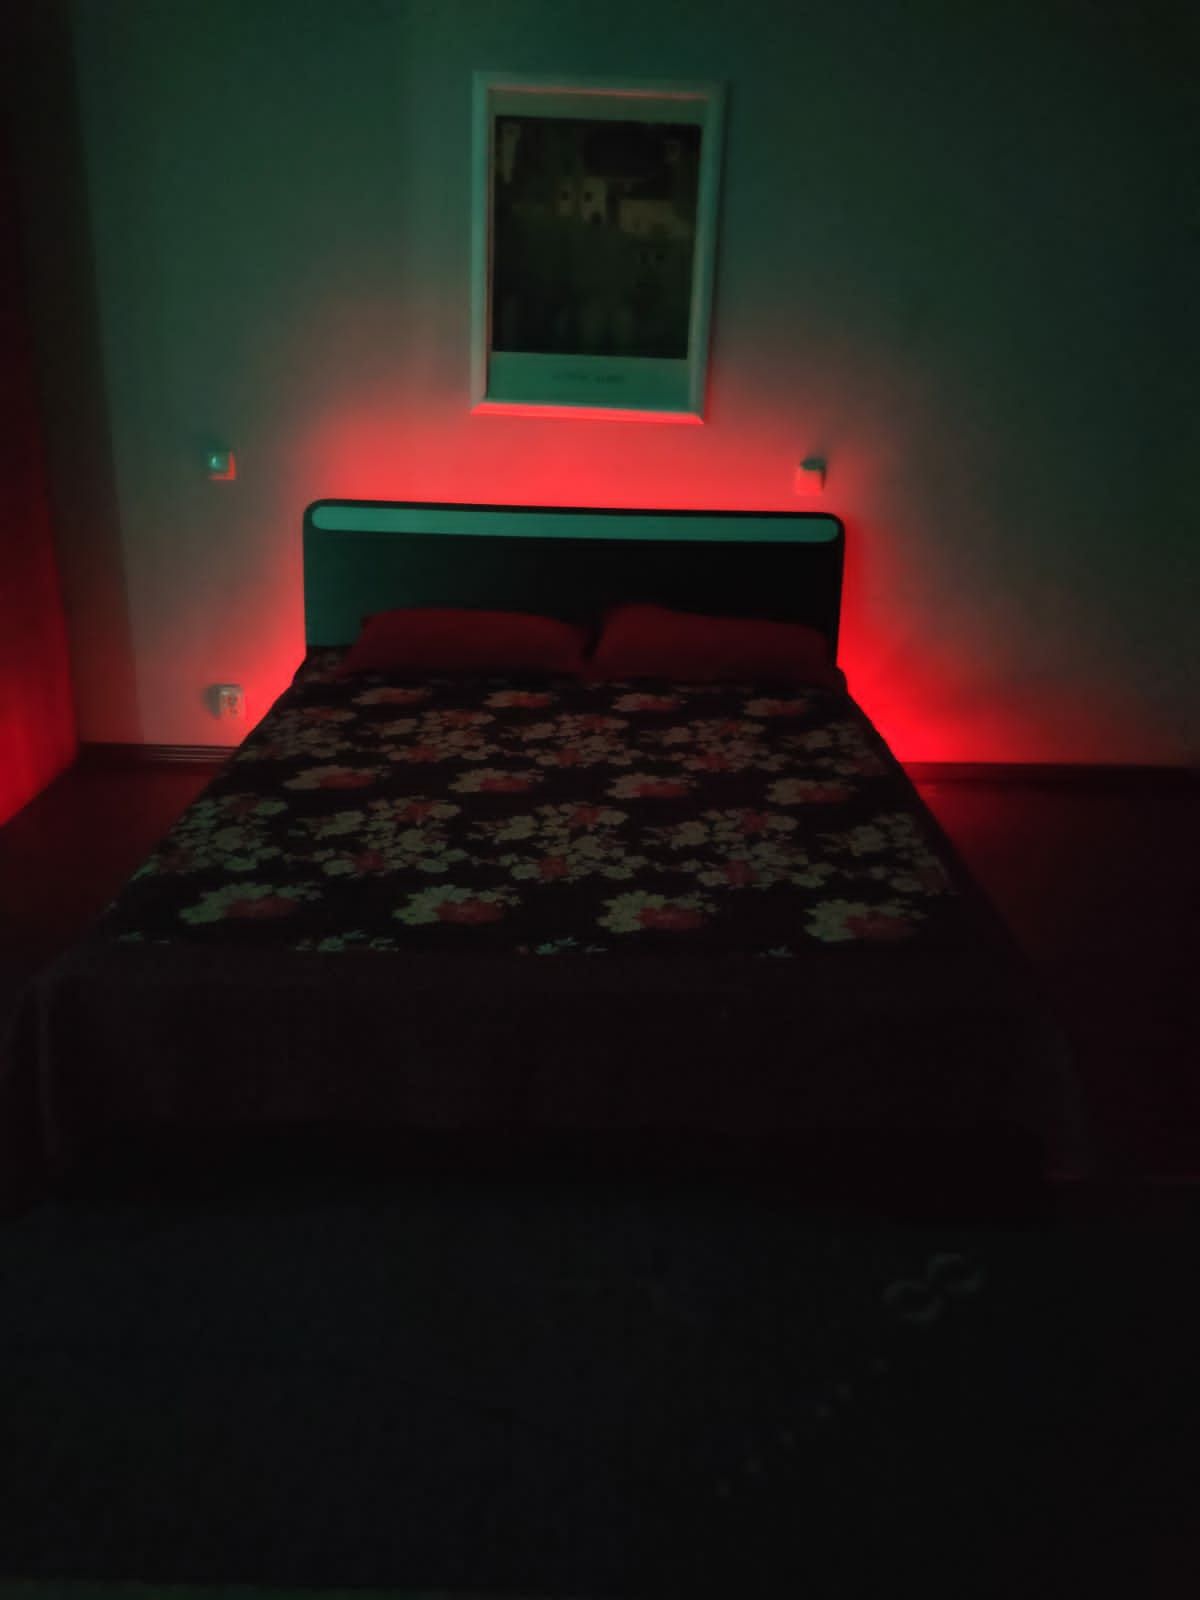 Квартира на ночь